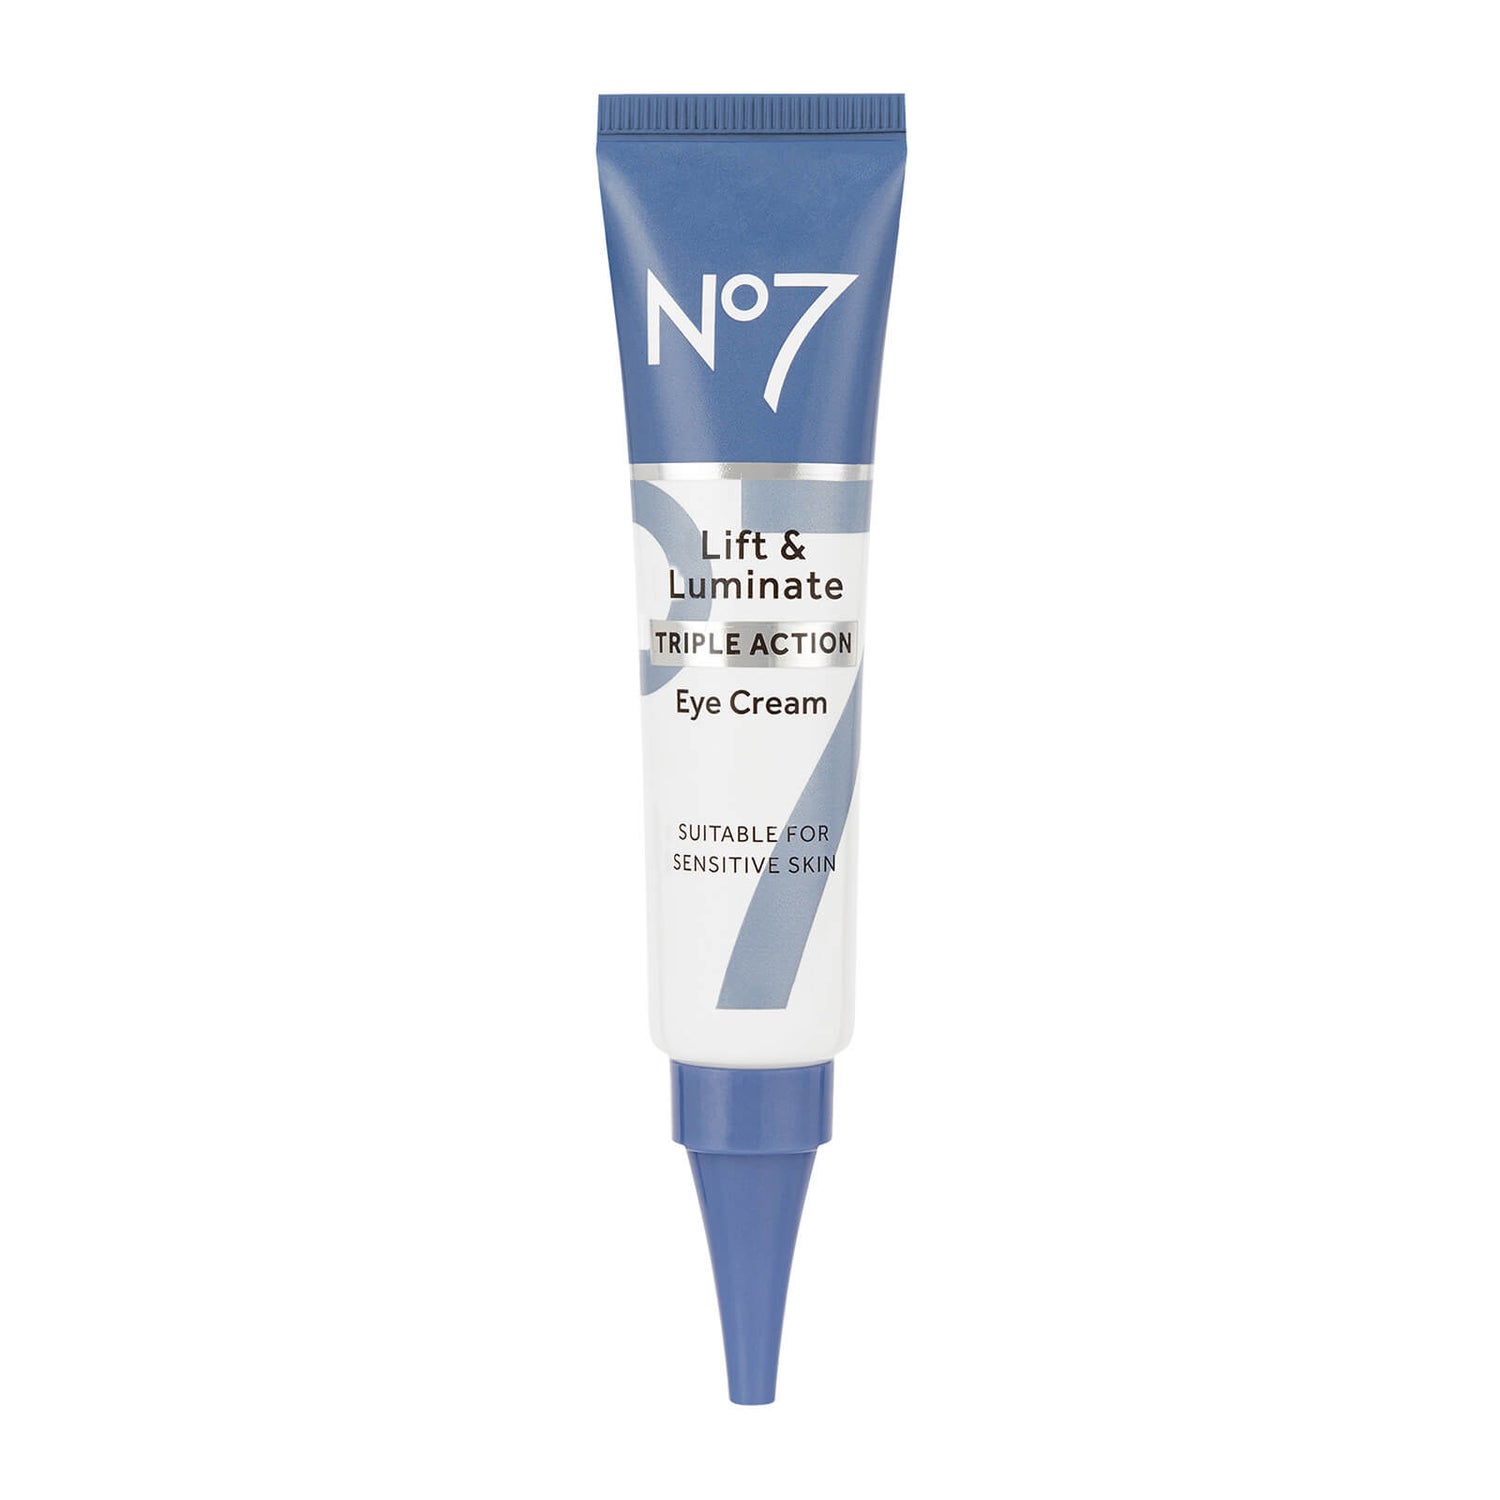 No7 Lift and Luminate Eye Cream